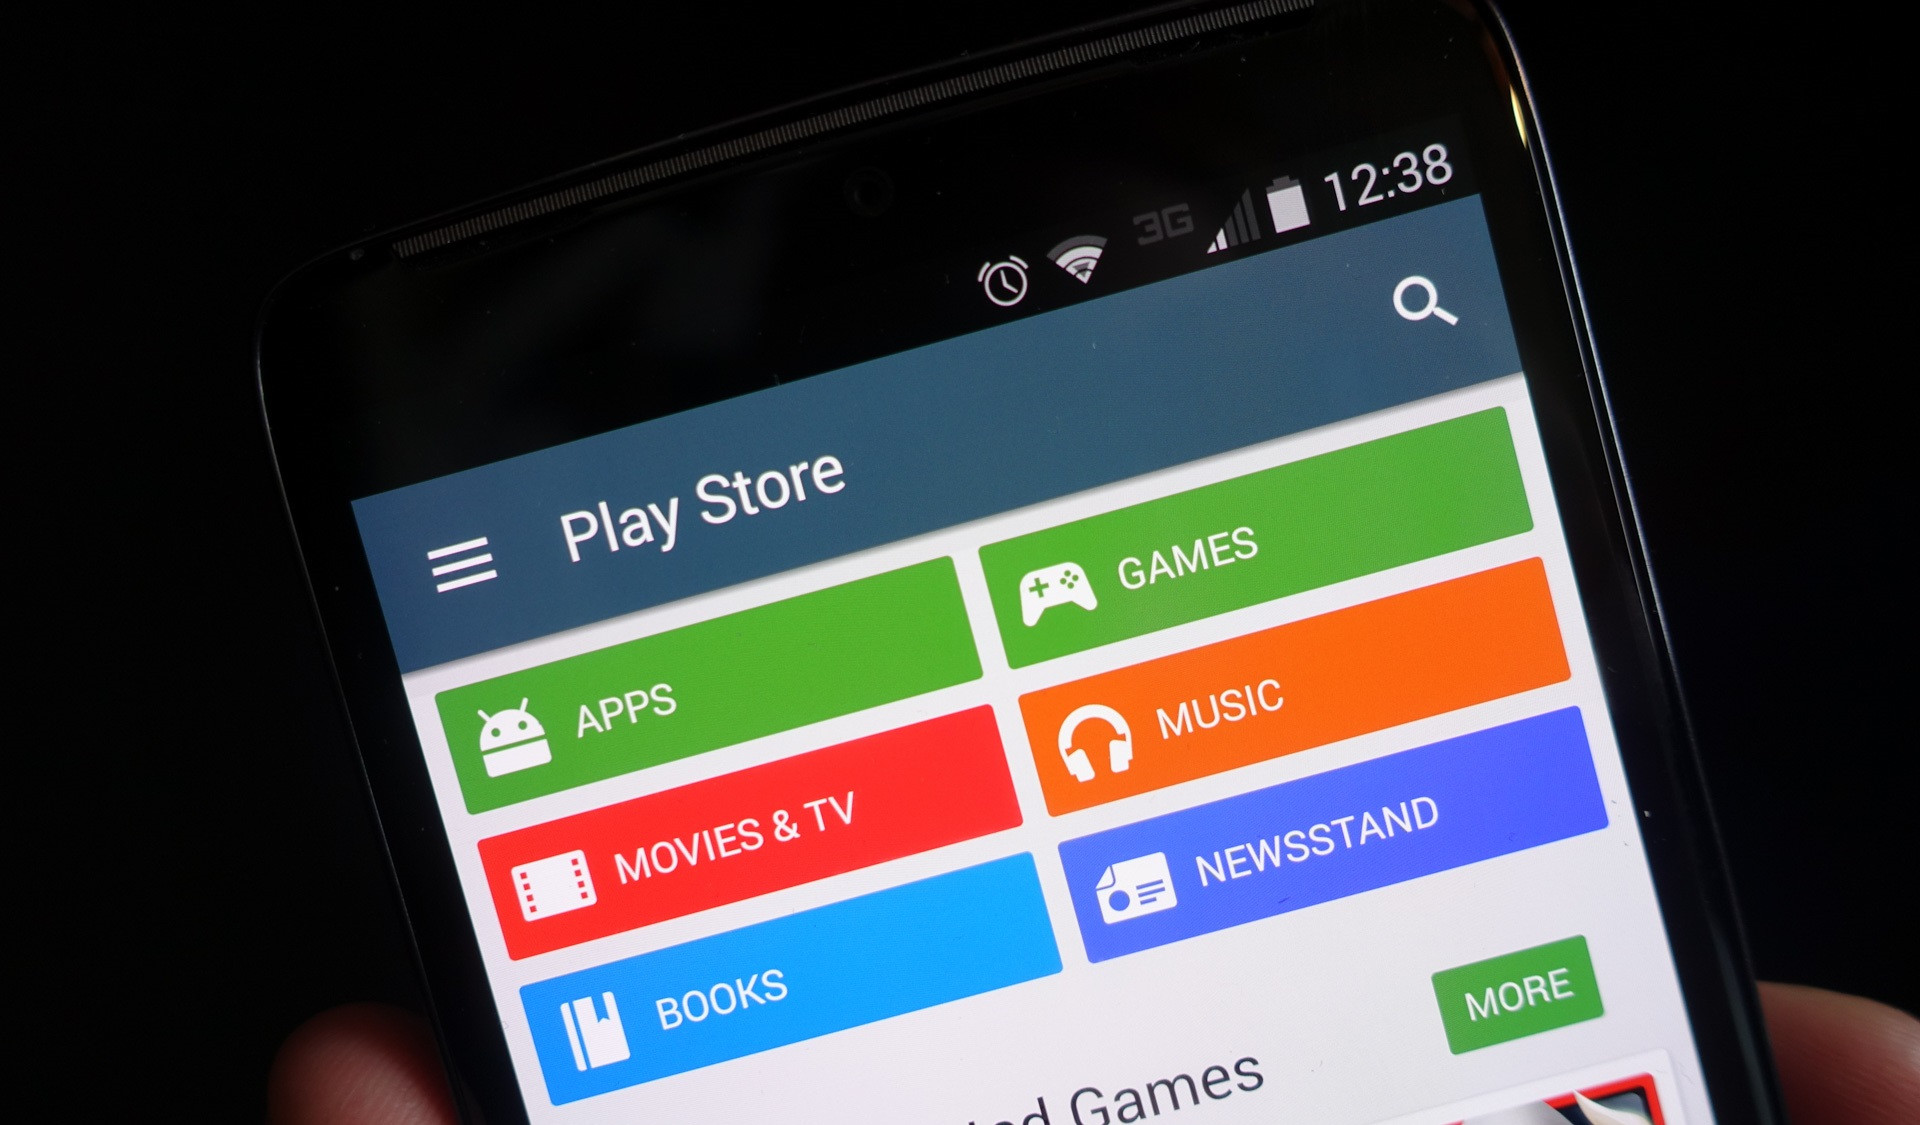 google play store instalar gratis para android